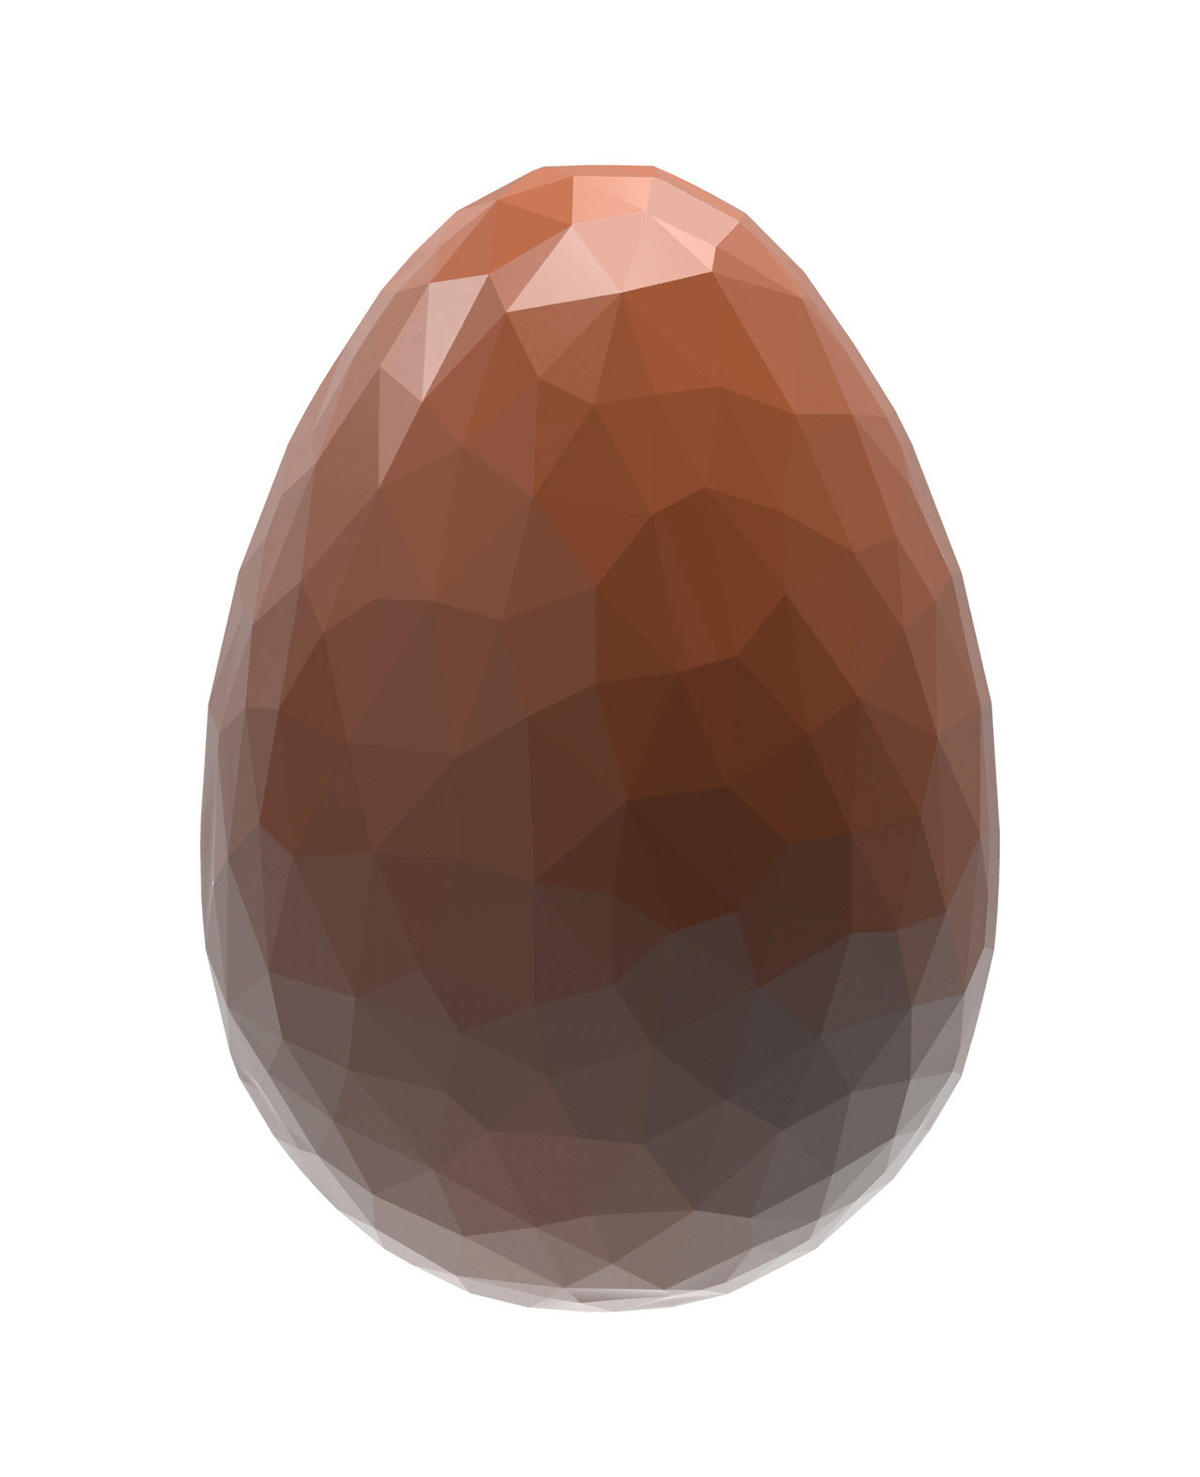 Se Professionel chokoladeform i polycarbonat - Egg Facet 3,3 cm CW1891 hos BageTid.dk